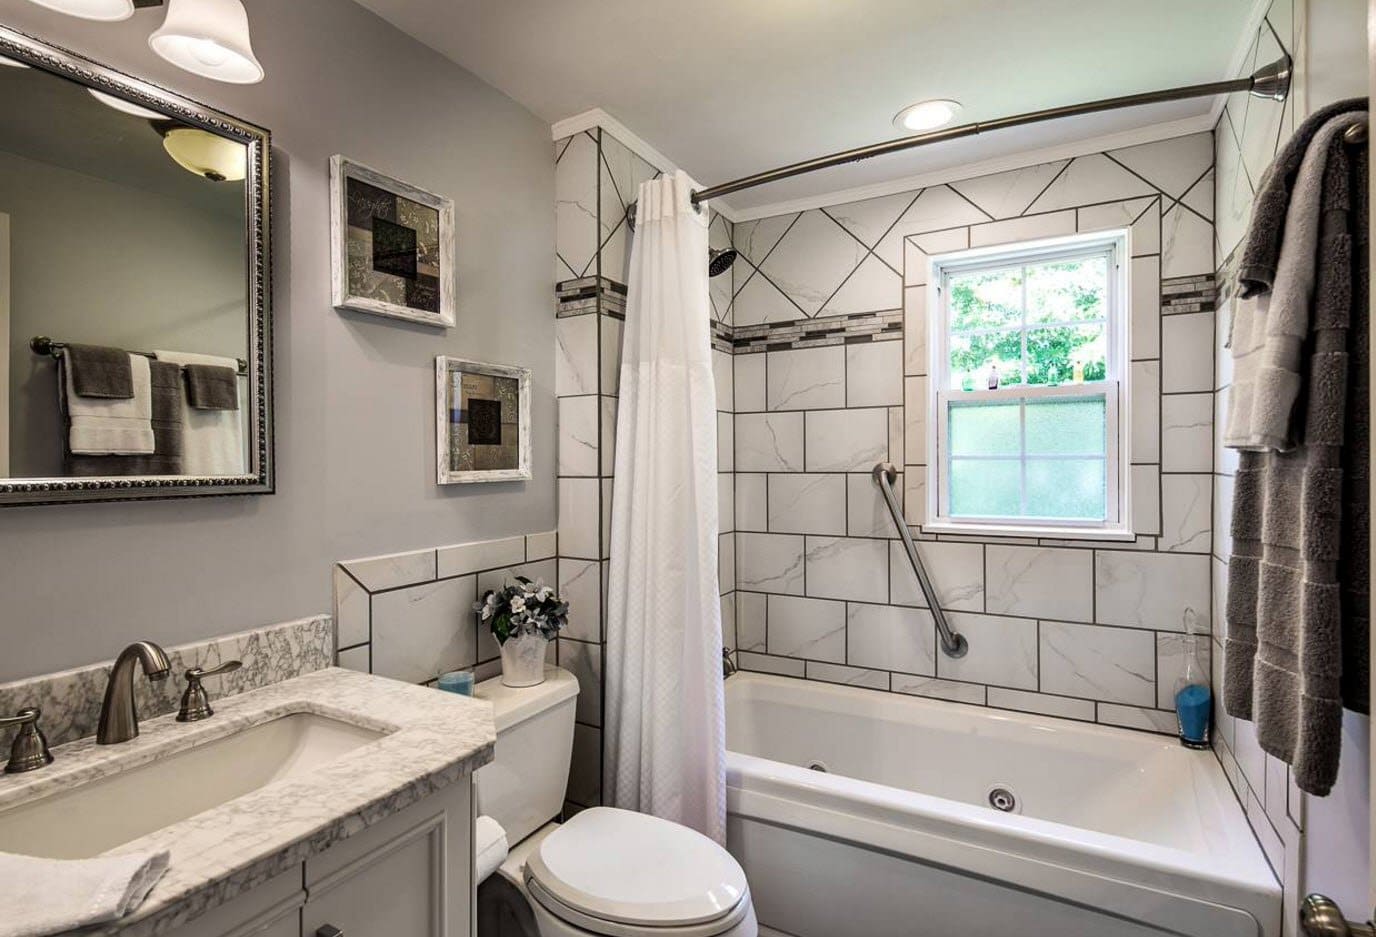 Планировка ванной комнаты с окном: 9 популярных вариантов